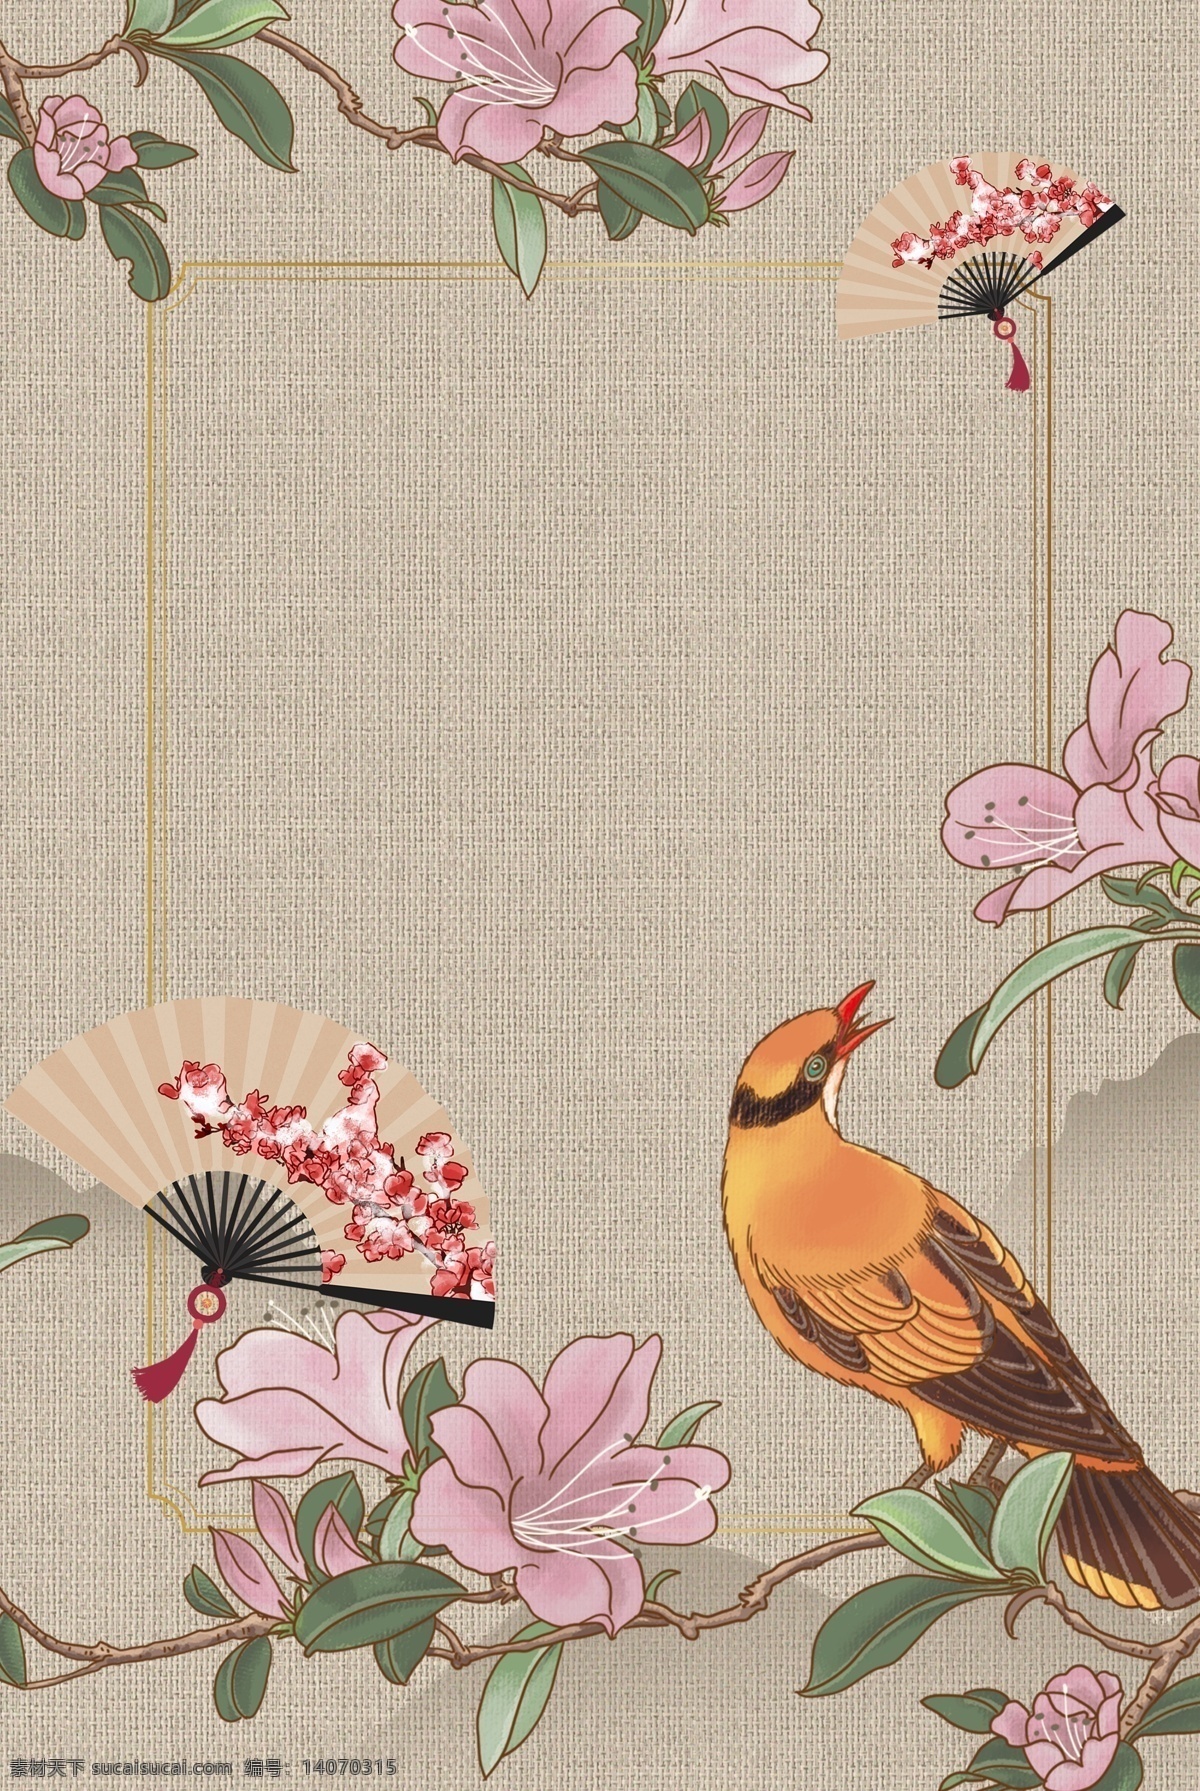 古风 花朵 古典 中国 风 工笔画 背景 远山 海报背景模板 传统海报 中式海报背景 中国风 折扇